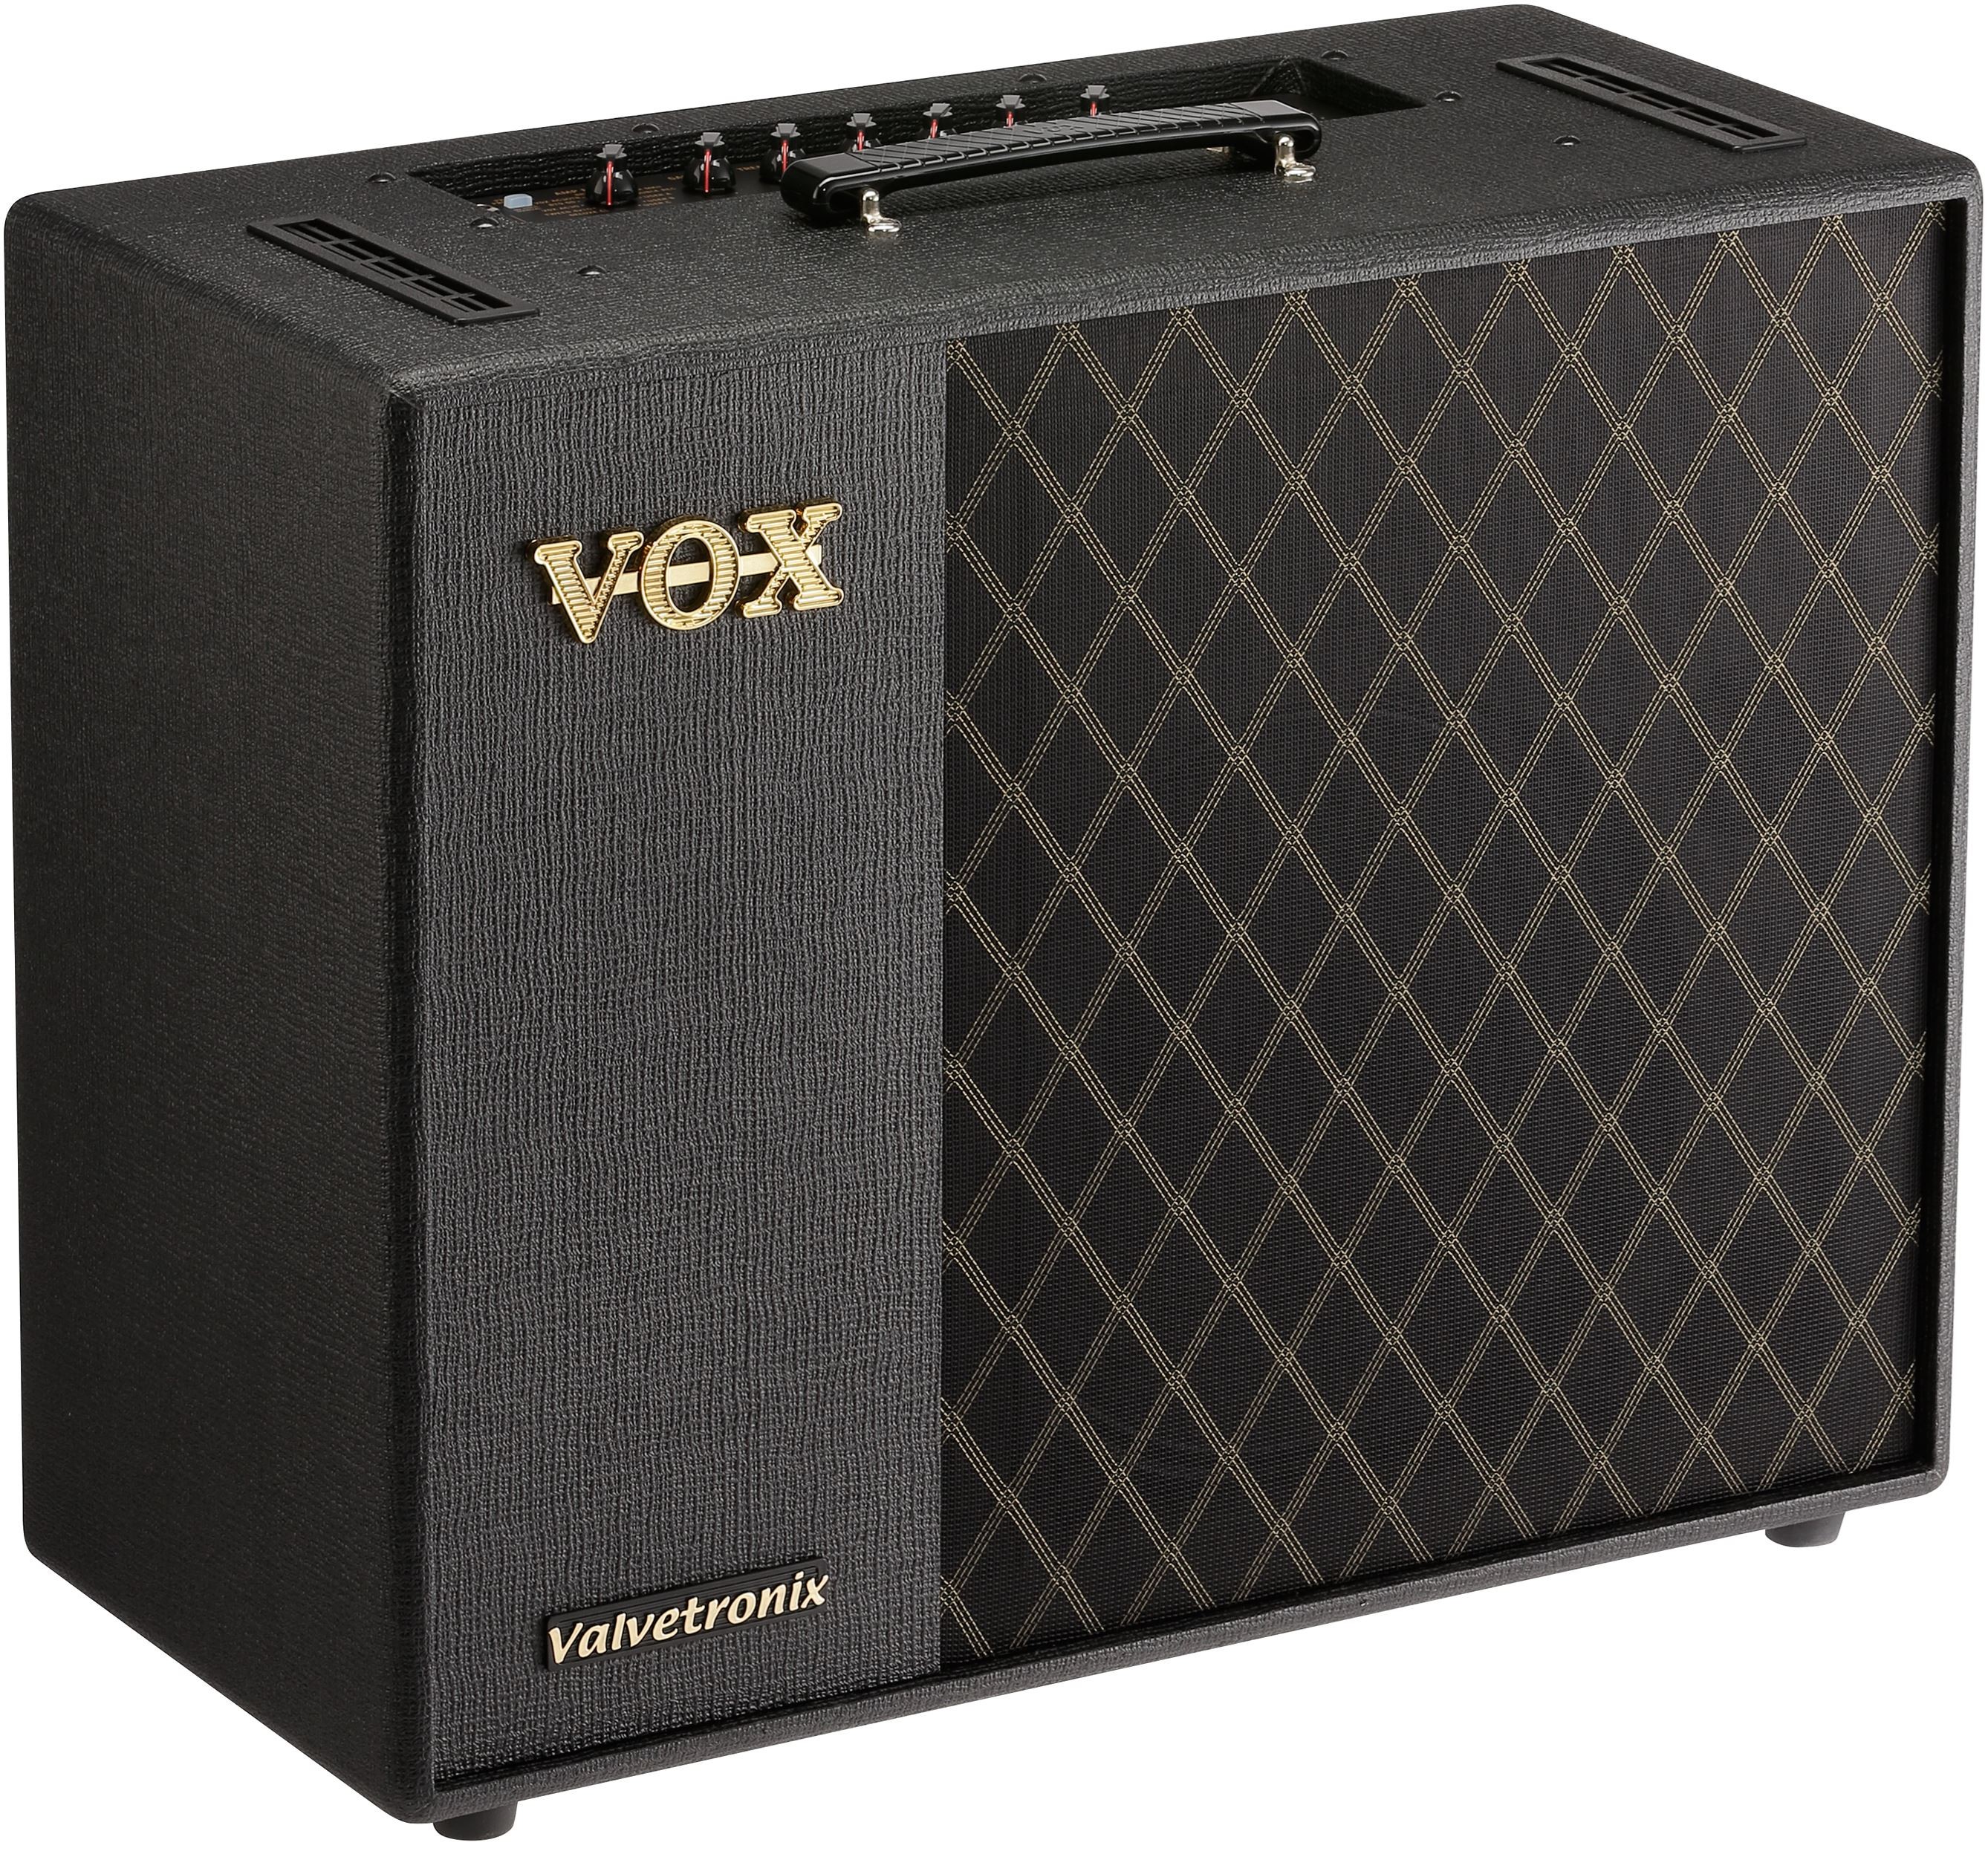 VOX VT100X - 100W gitarforsterker